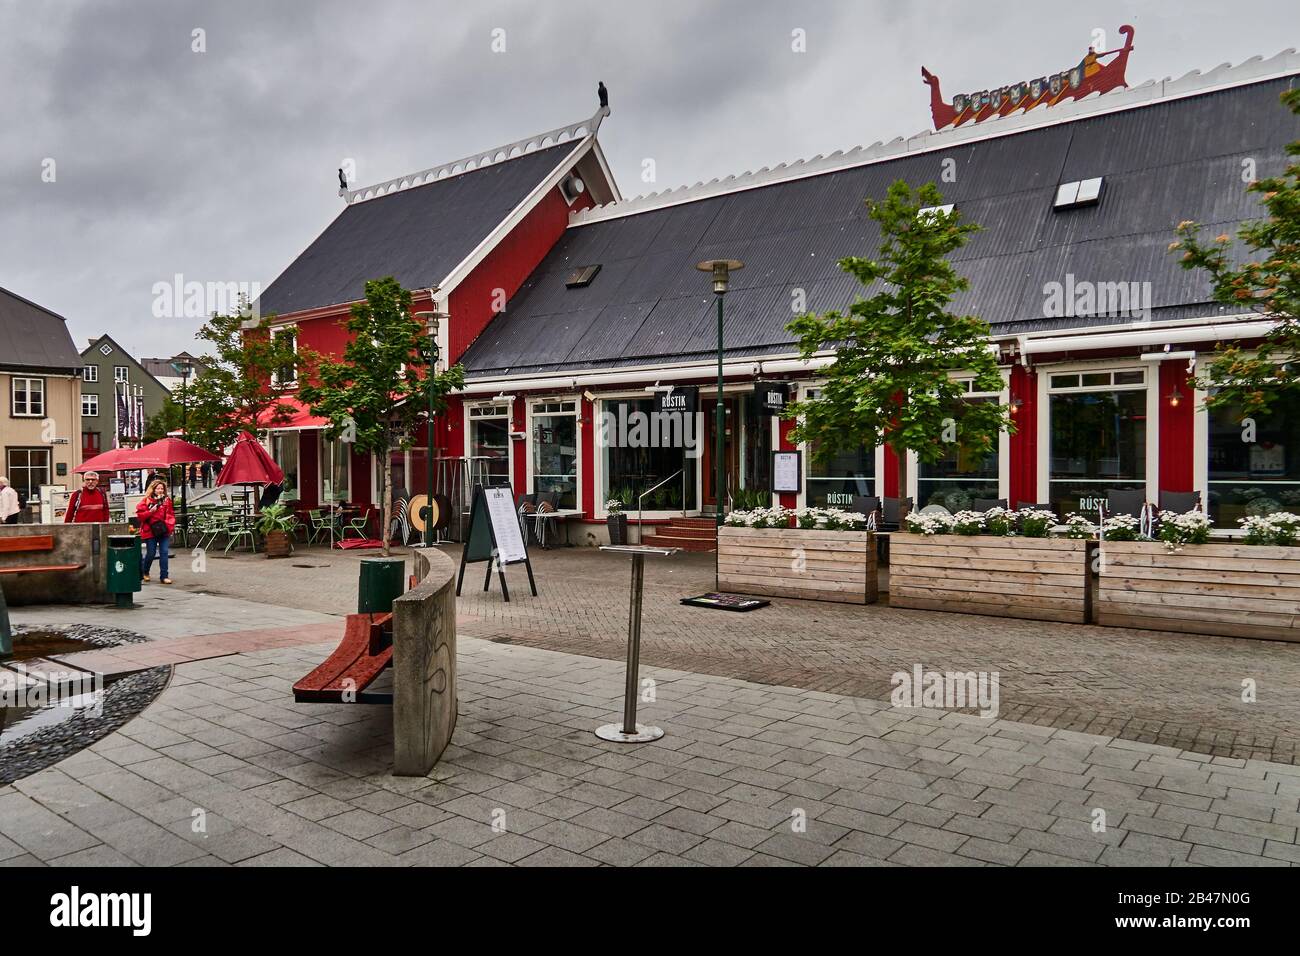 Europa, Reykjavik, Island., Ingolfstorg-Platz, rotes Langhaus mit einem Langschiff und 4 Statuen von Falken, Geschäften und Restaurants während eines regnerischen Tages im Sommer Stockfoto